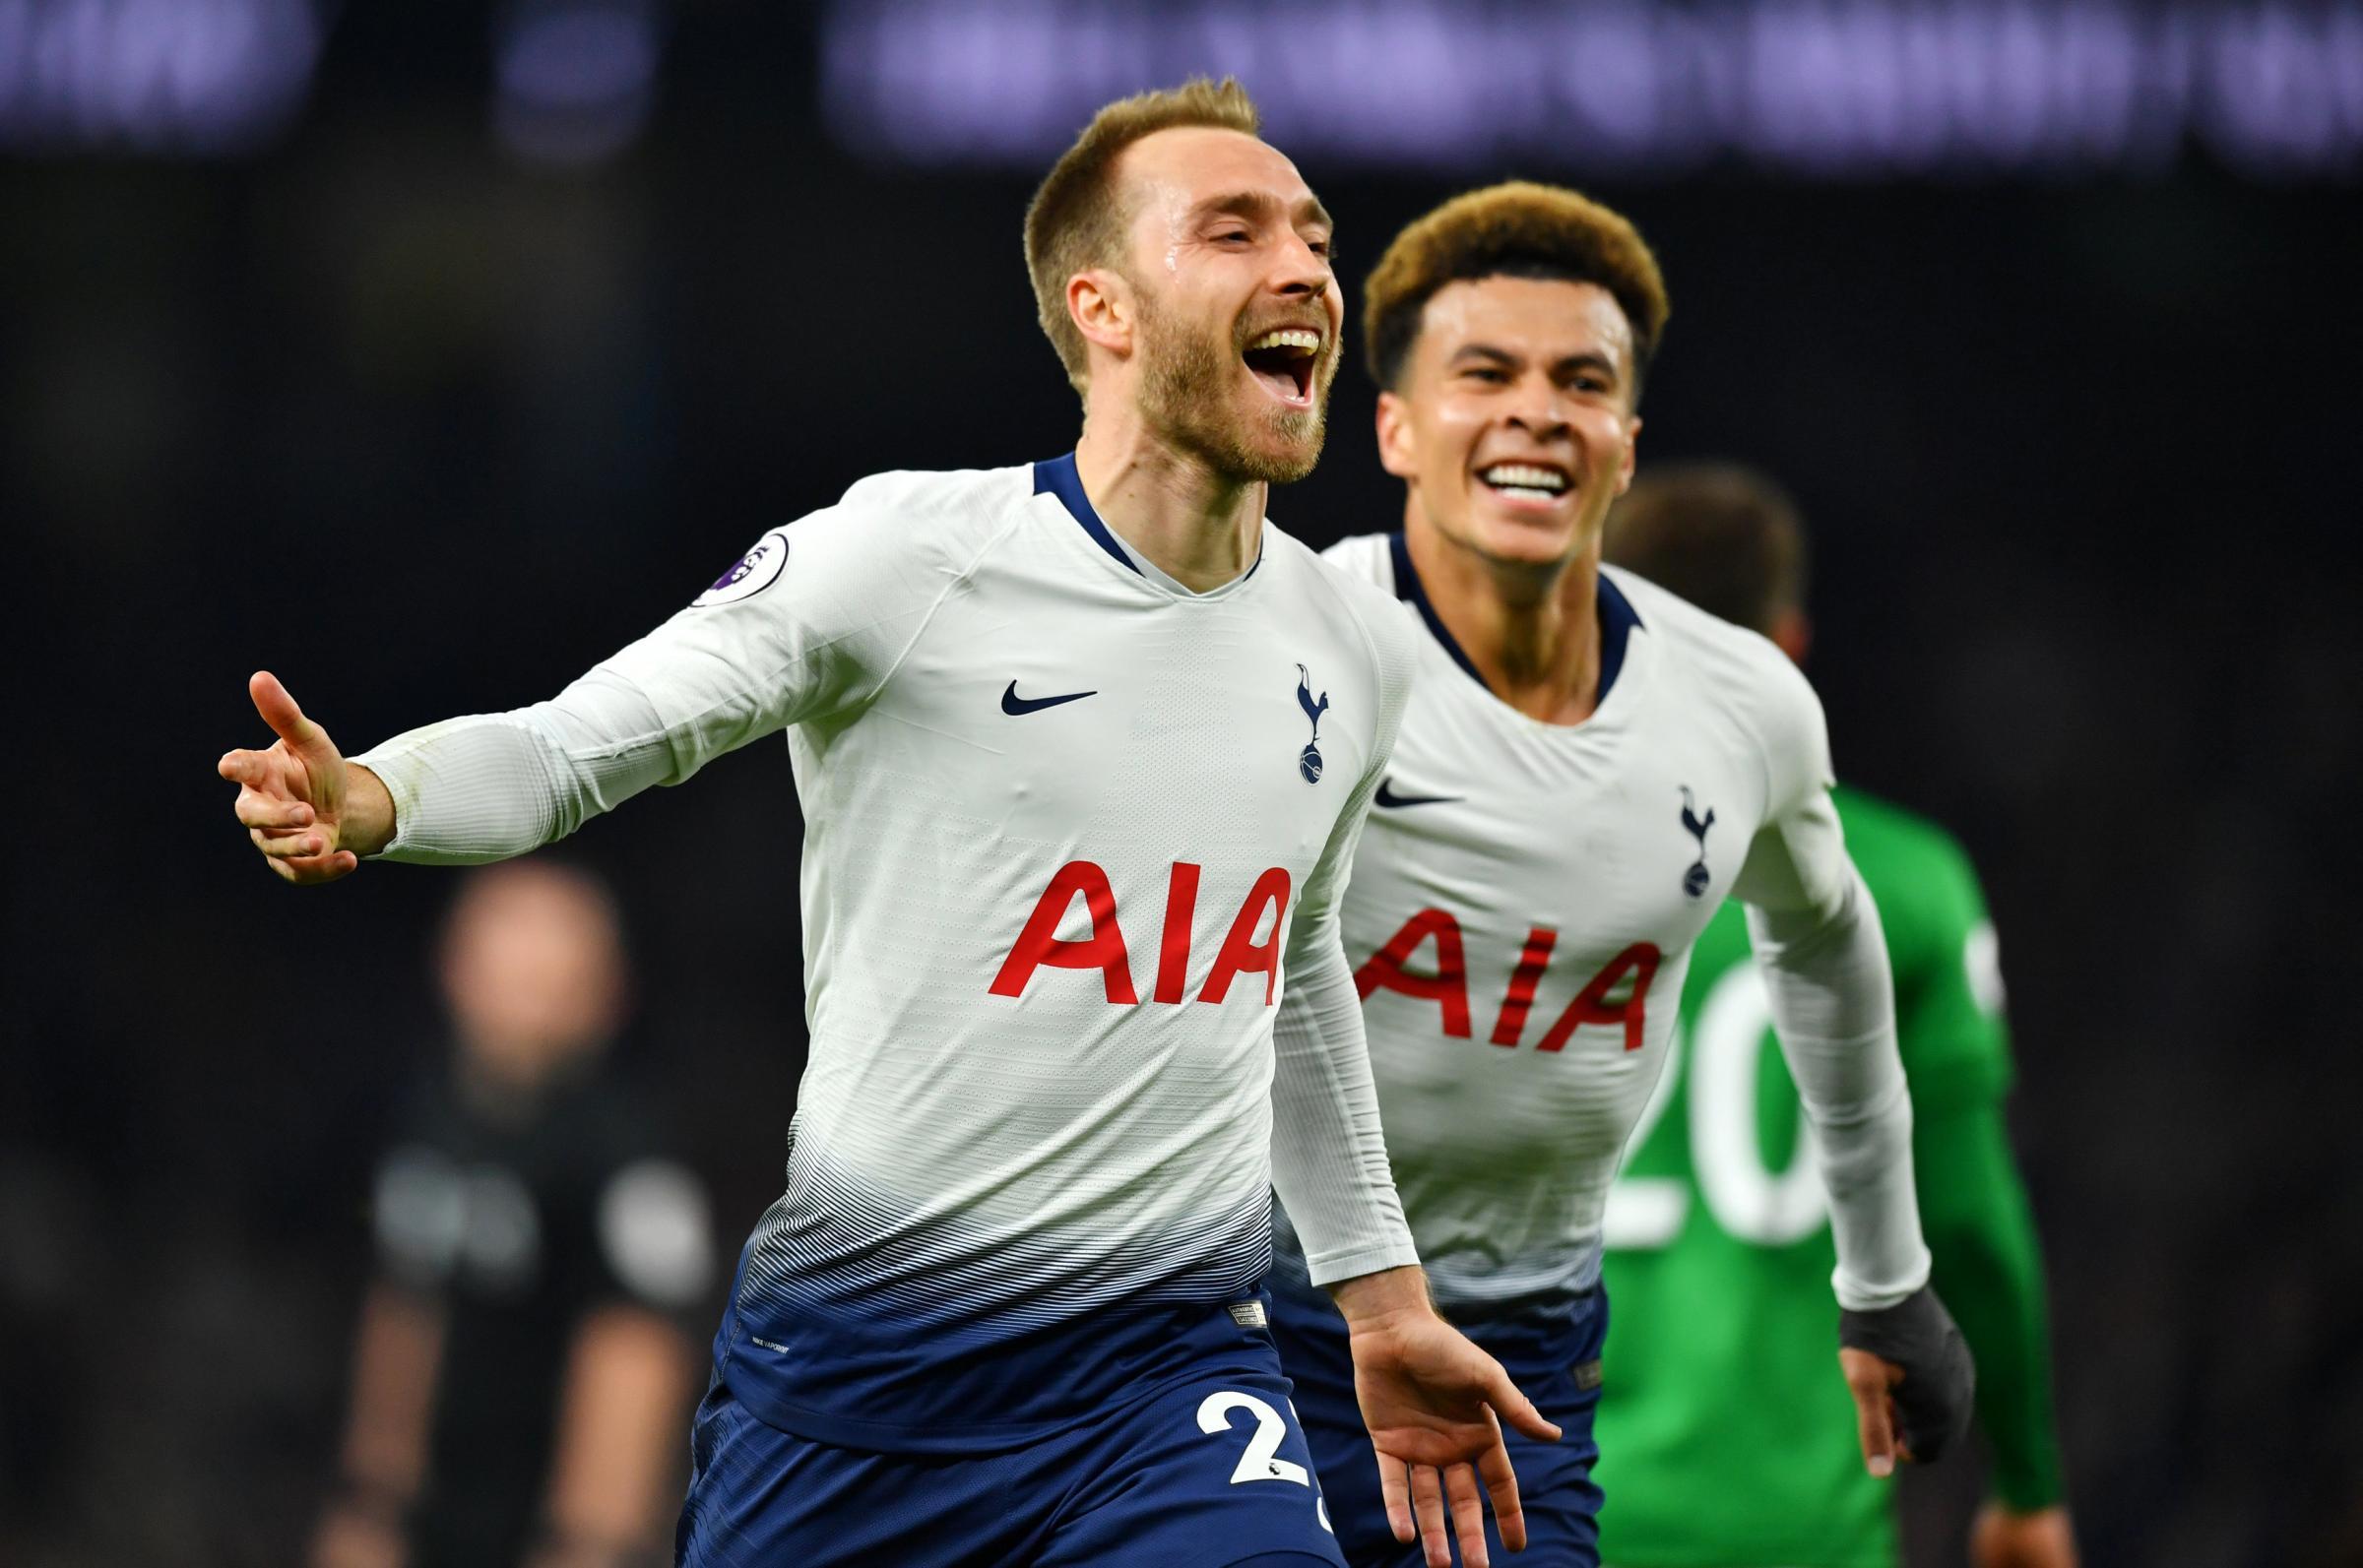 Tottenham Hotspur: Christian Eriksen open to new contract talks